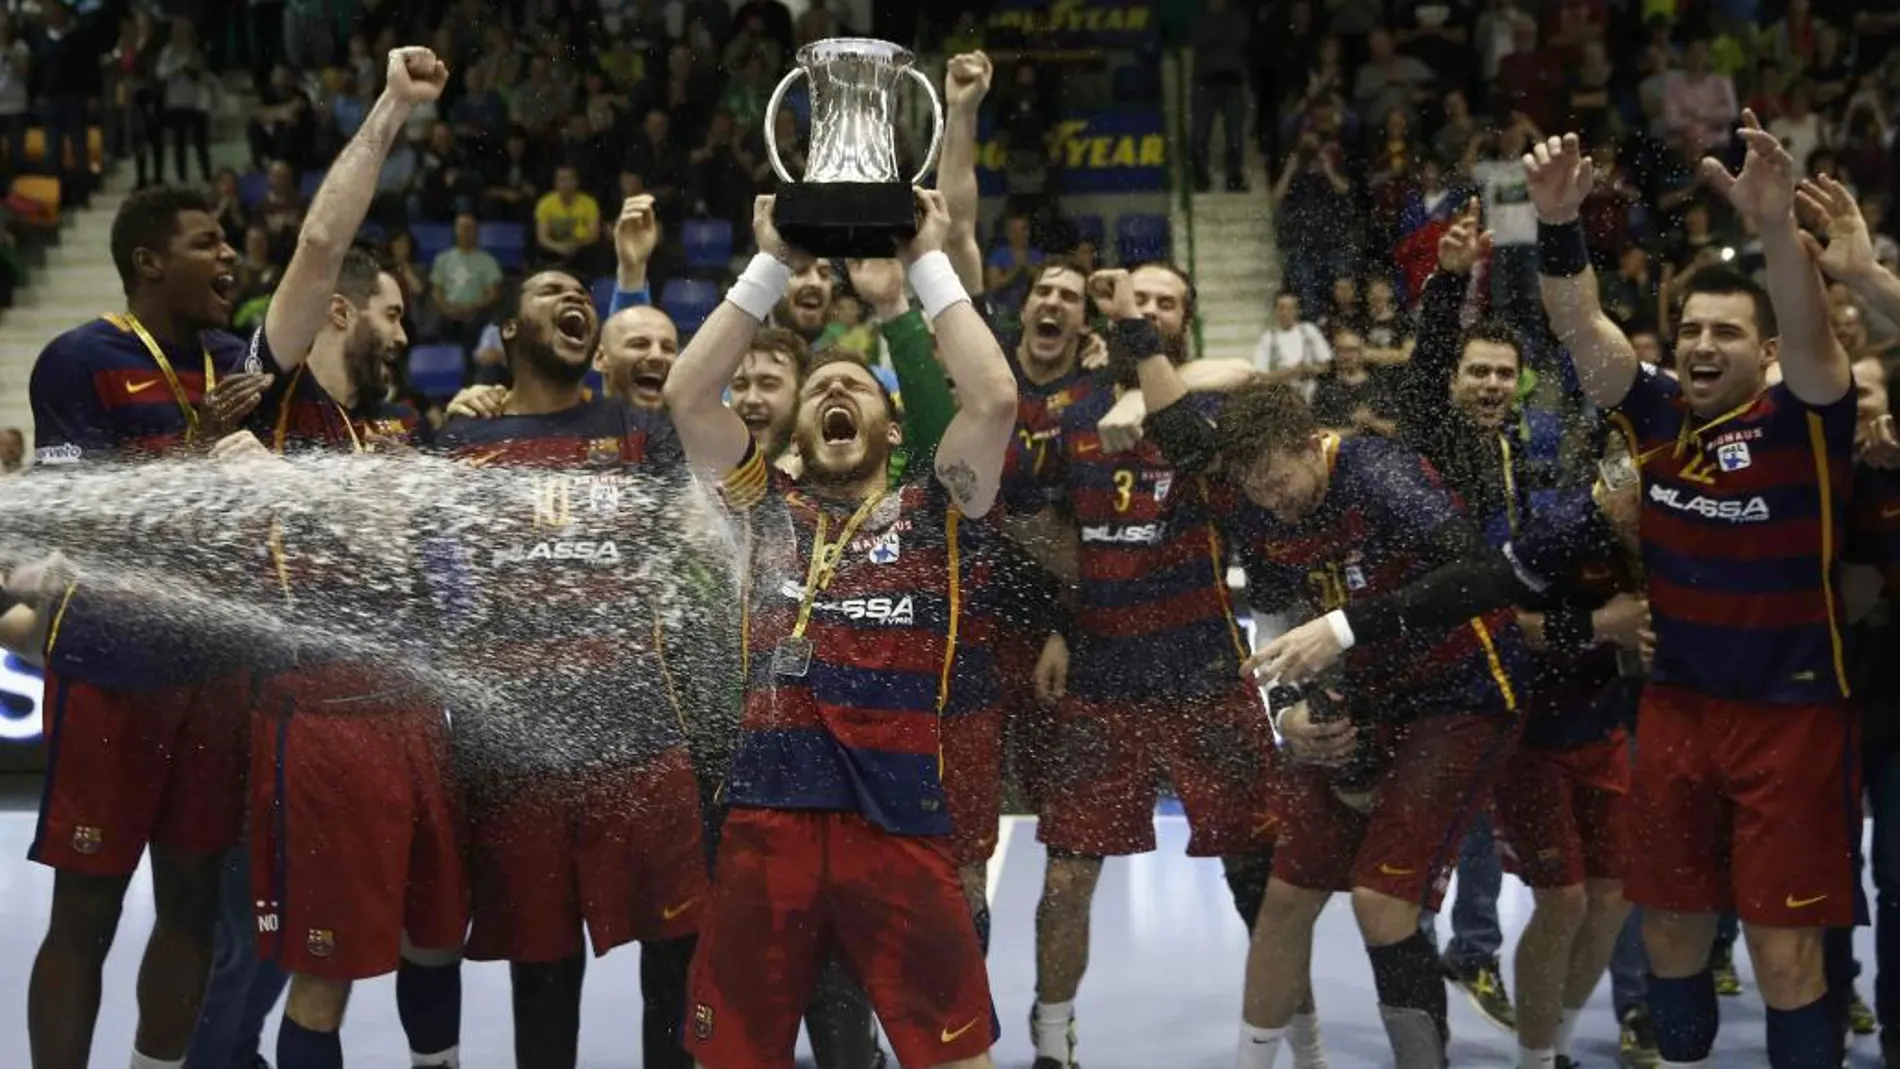 El FC Barcelona Lassa revalidó el título de la Copa del Rey de balonmano al ganar en la final disputada en Pamplona al anfitrión Helvetia Anaitasuna